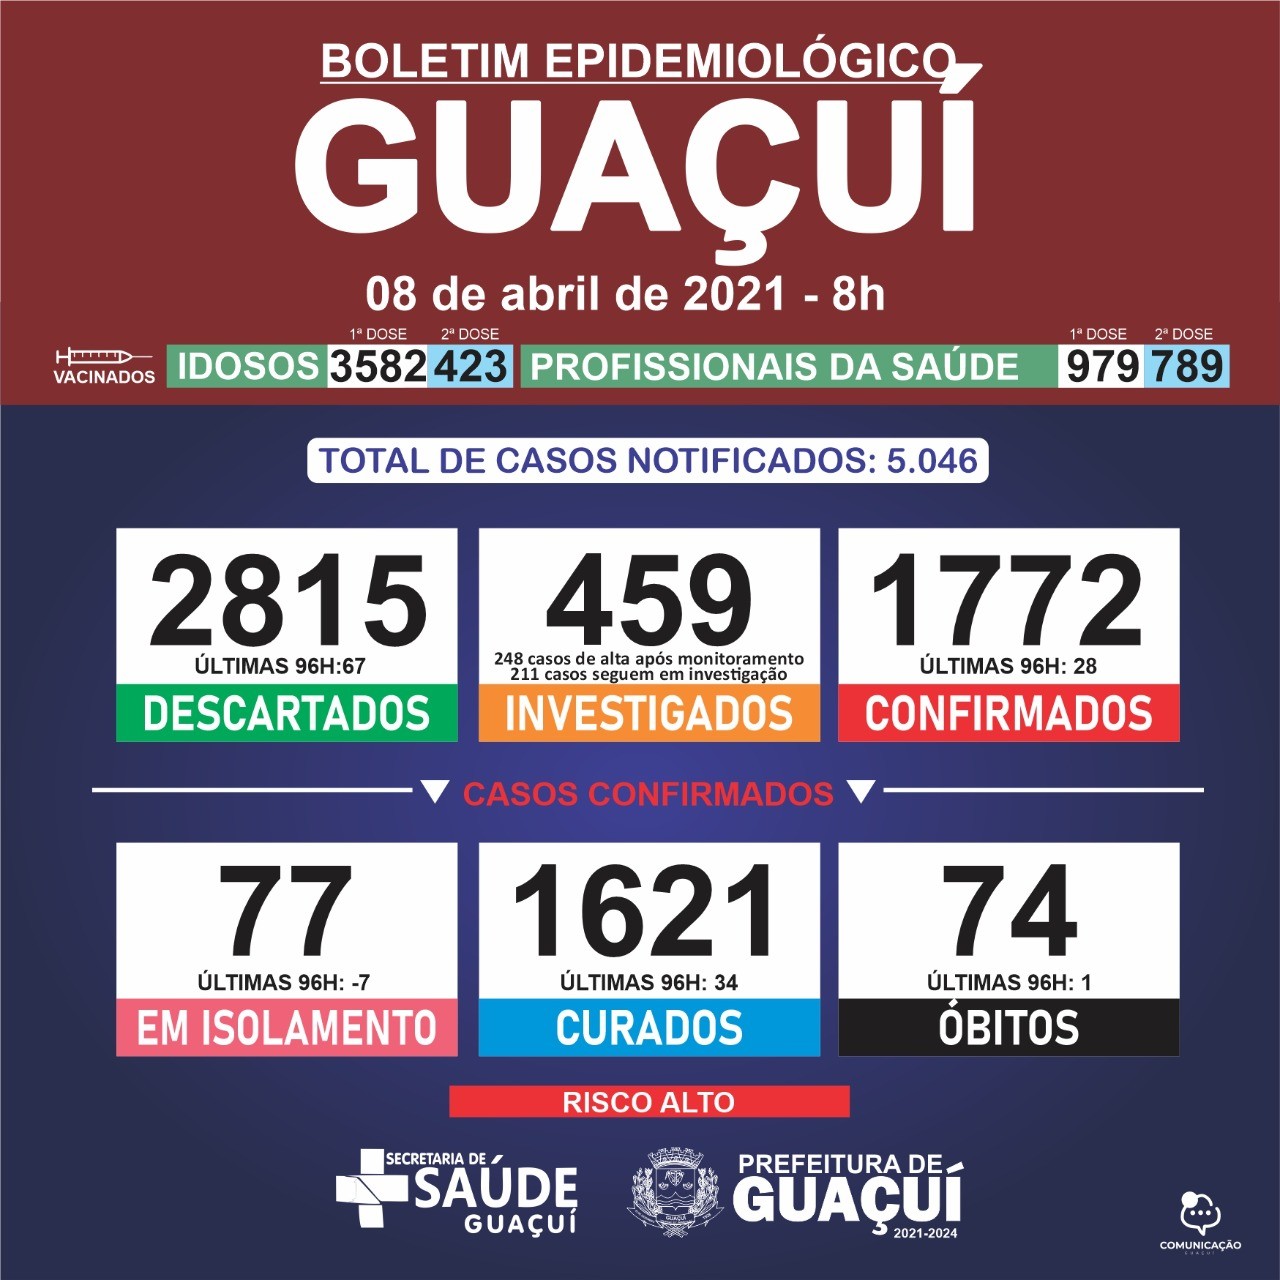 Boletim Epidemiológico 08/04/21: Guaçuí registra 1 óbito, 34 curados e 28 casos confirmados nas últimas 96 horas